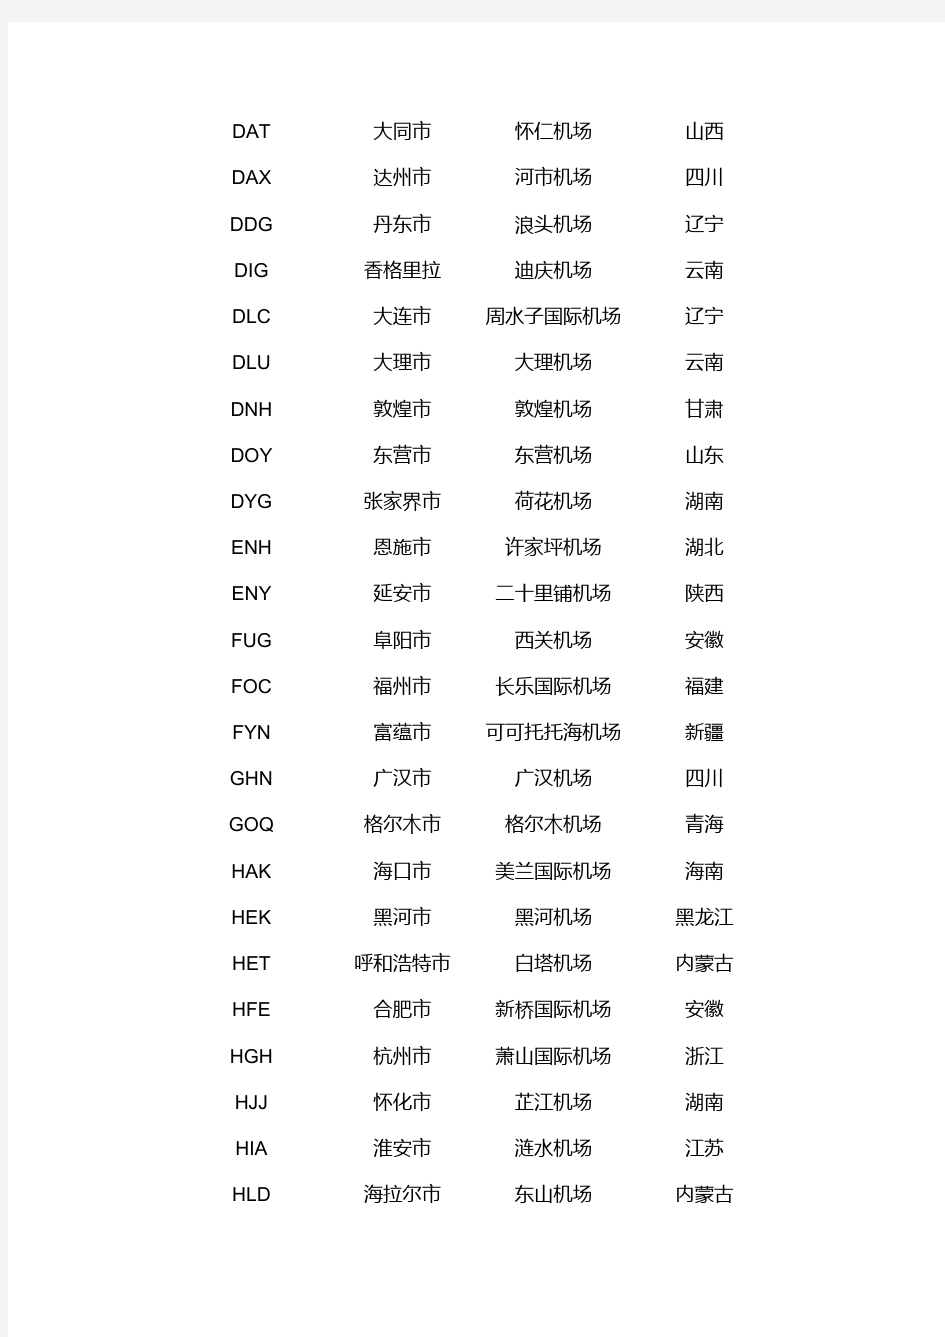 中国各城市机场三字代码